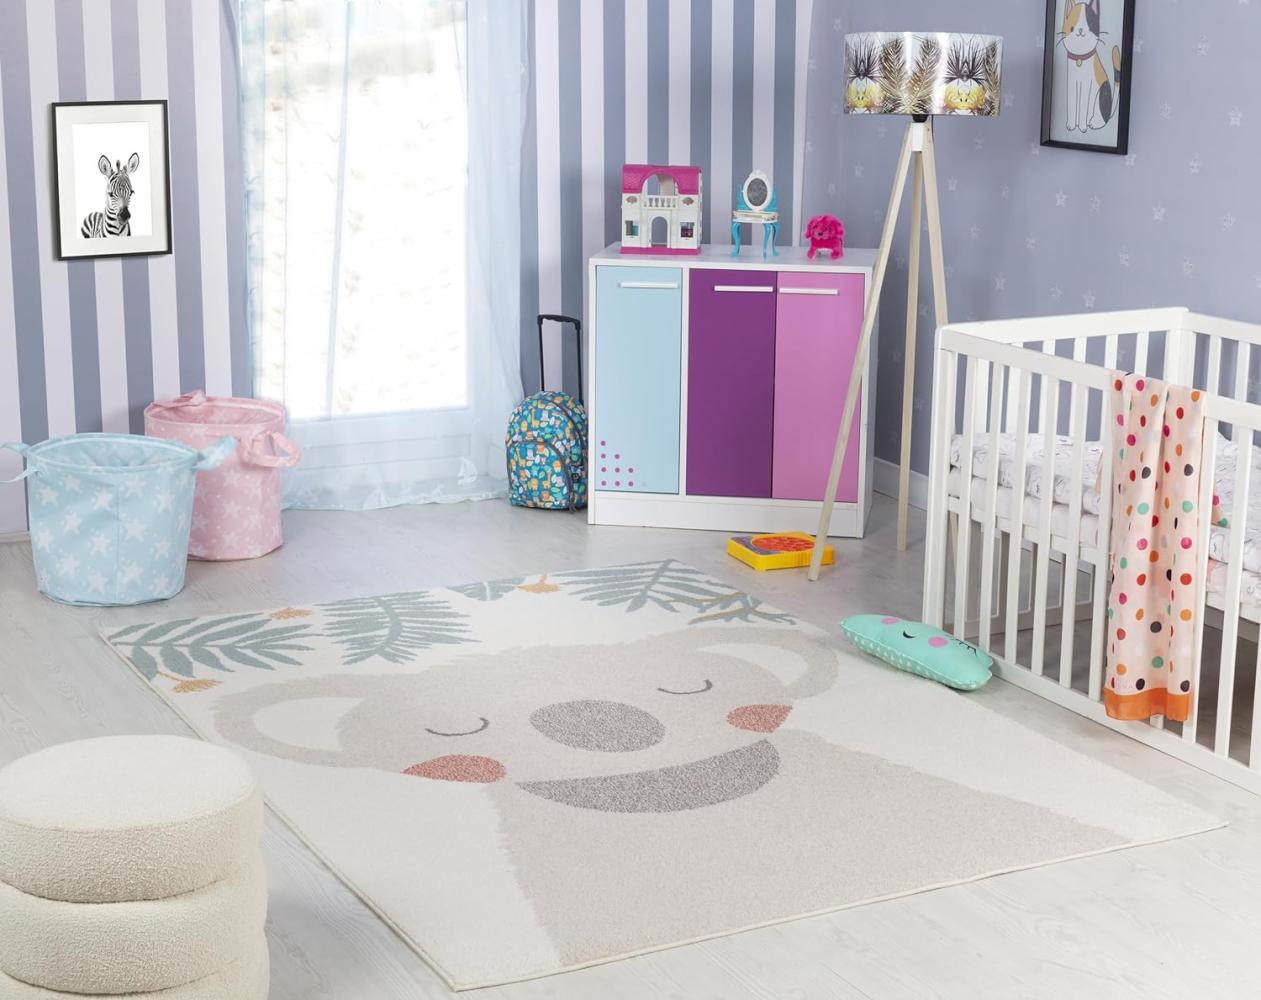 Surya Koala Kinderteppich - Cartoon Teppich Kinderzimmer oder Babyzimmer, Kinderzimmerteppich, Krabbelteppich oder Spielteppich - Baby Teppich für Jungen & Mädchen, Beige und Elfenbein 160x213 Bild 1